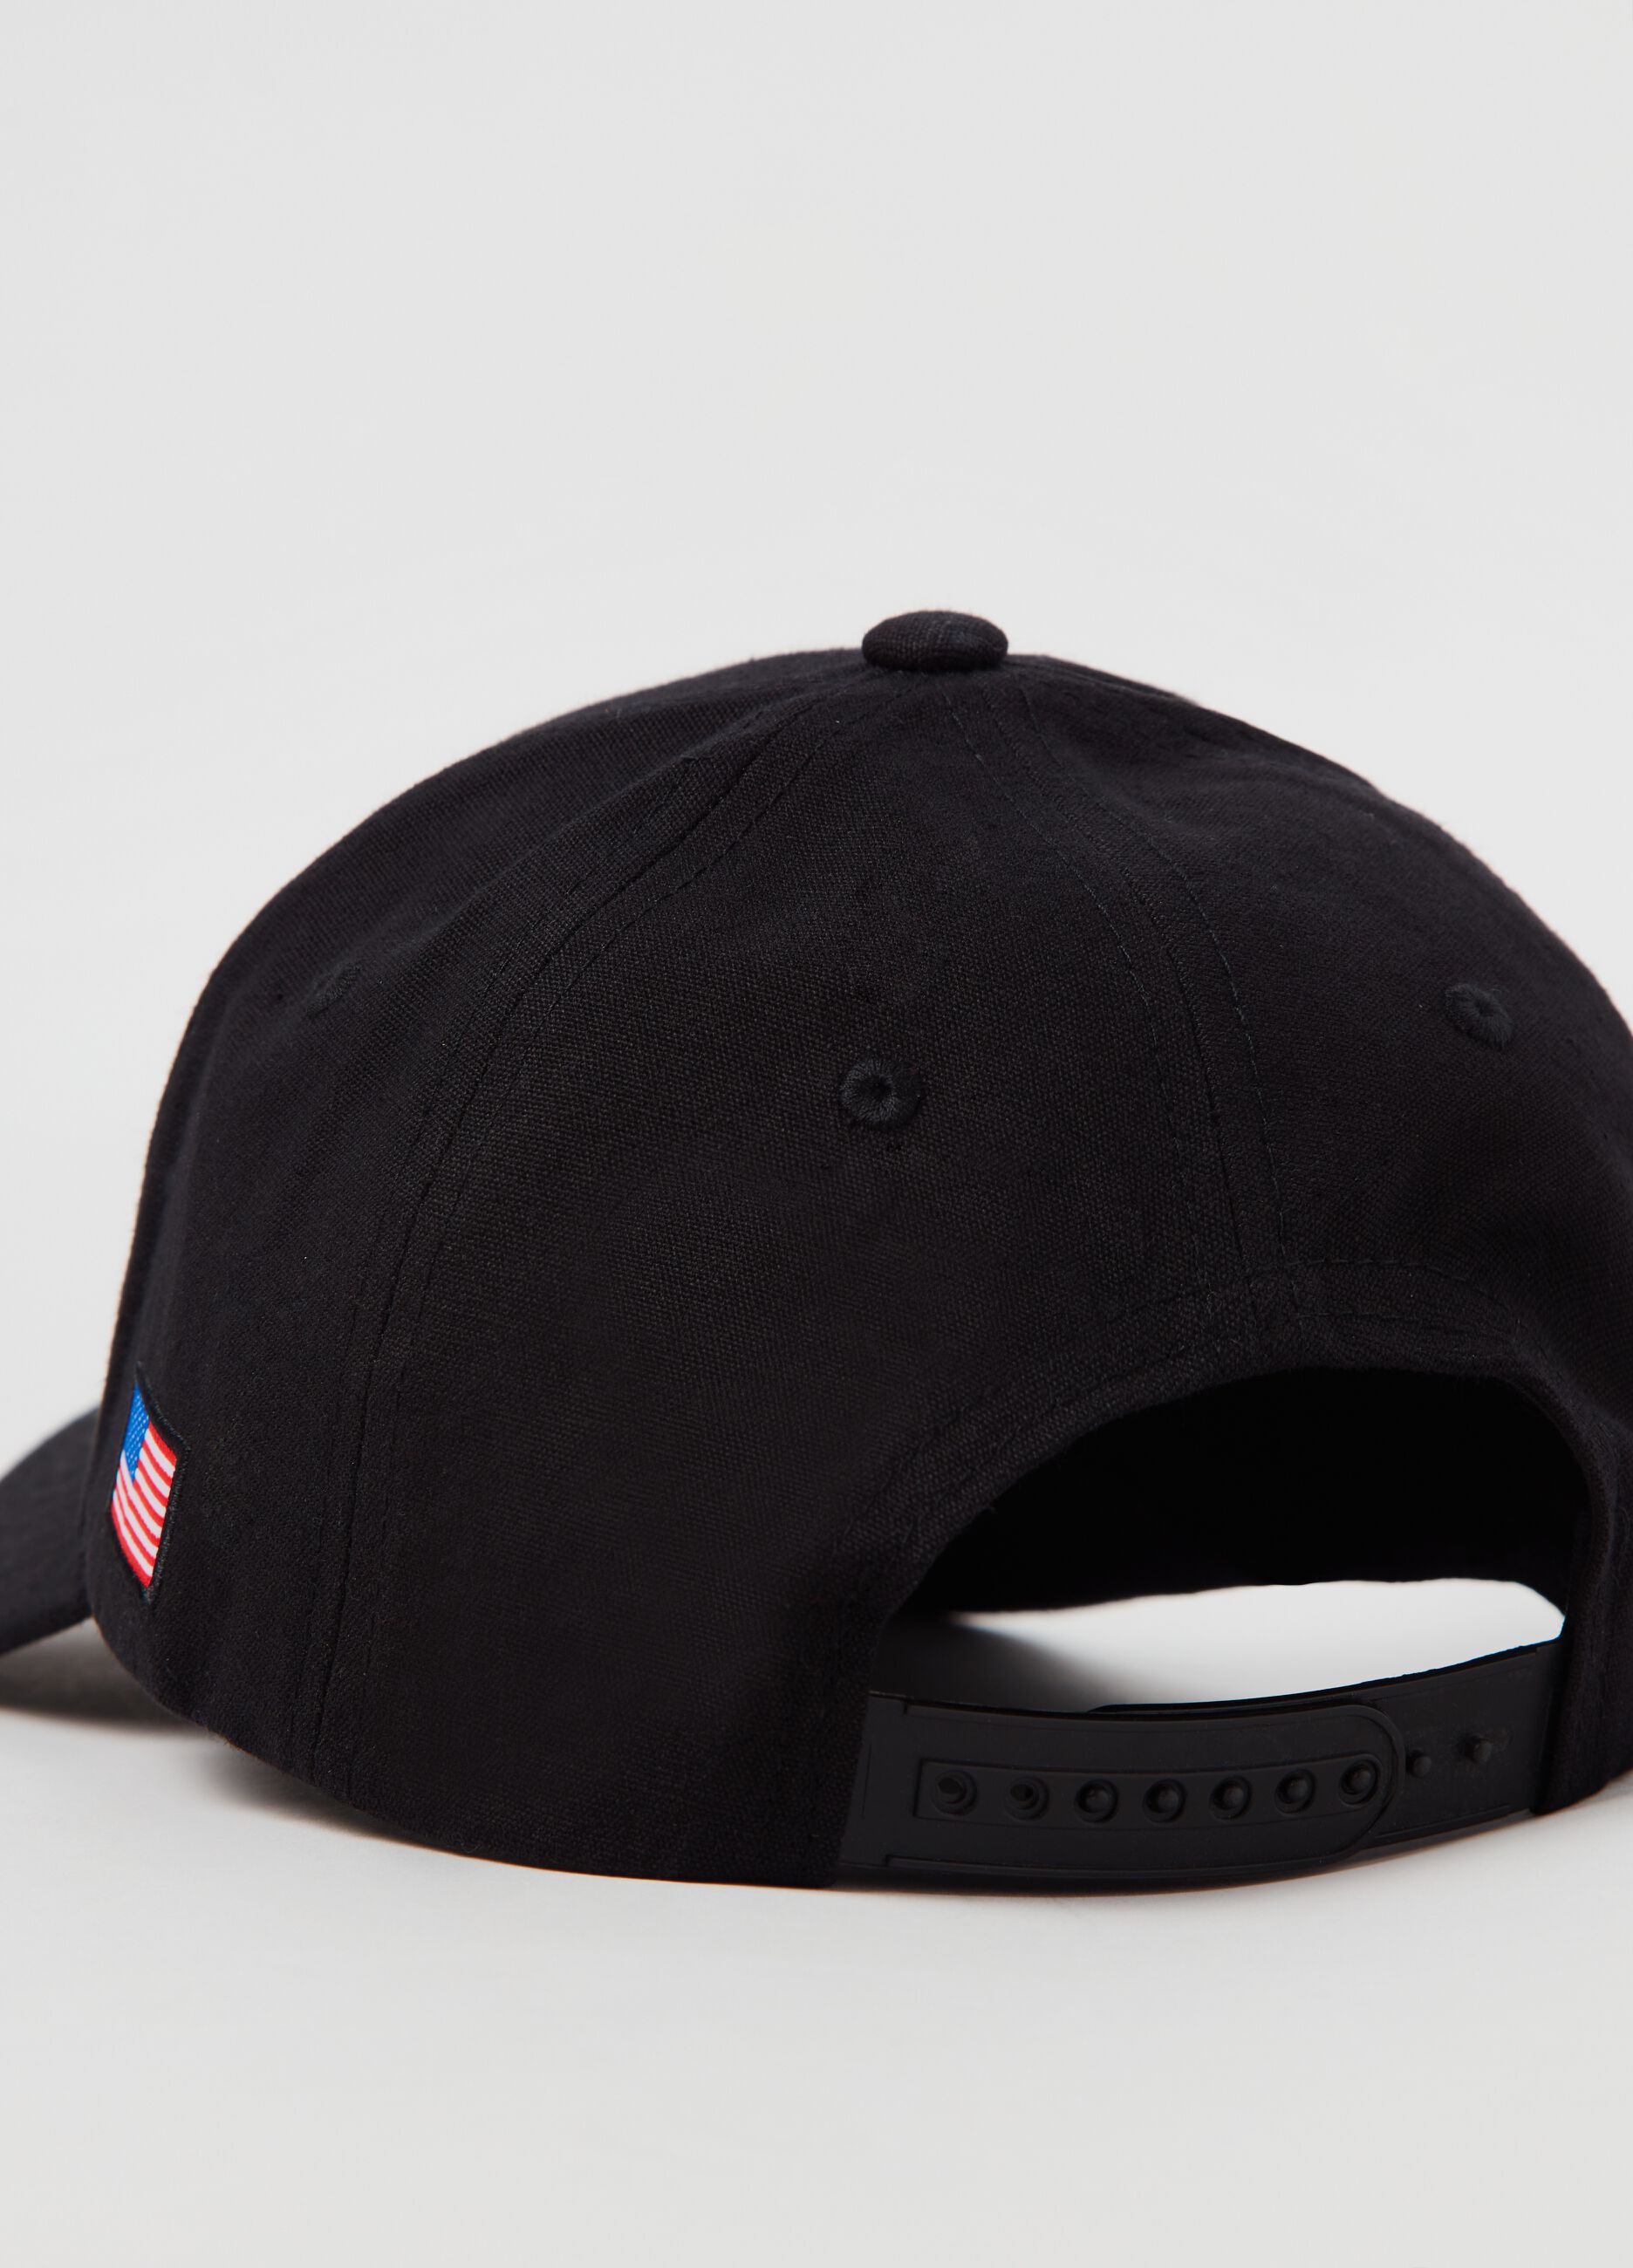 Correlaat Moeras buiten gebruik Man's Black Baseball cap with Everlast embroidery. | OVS